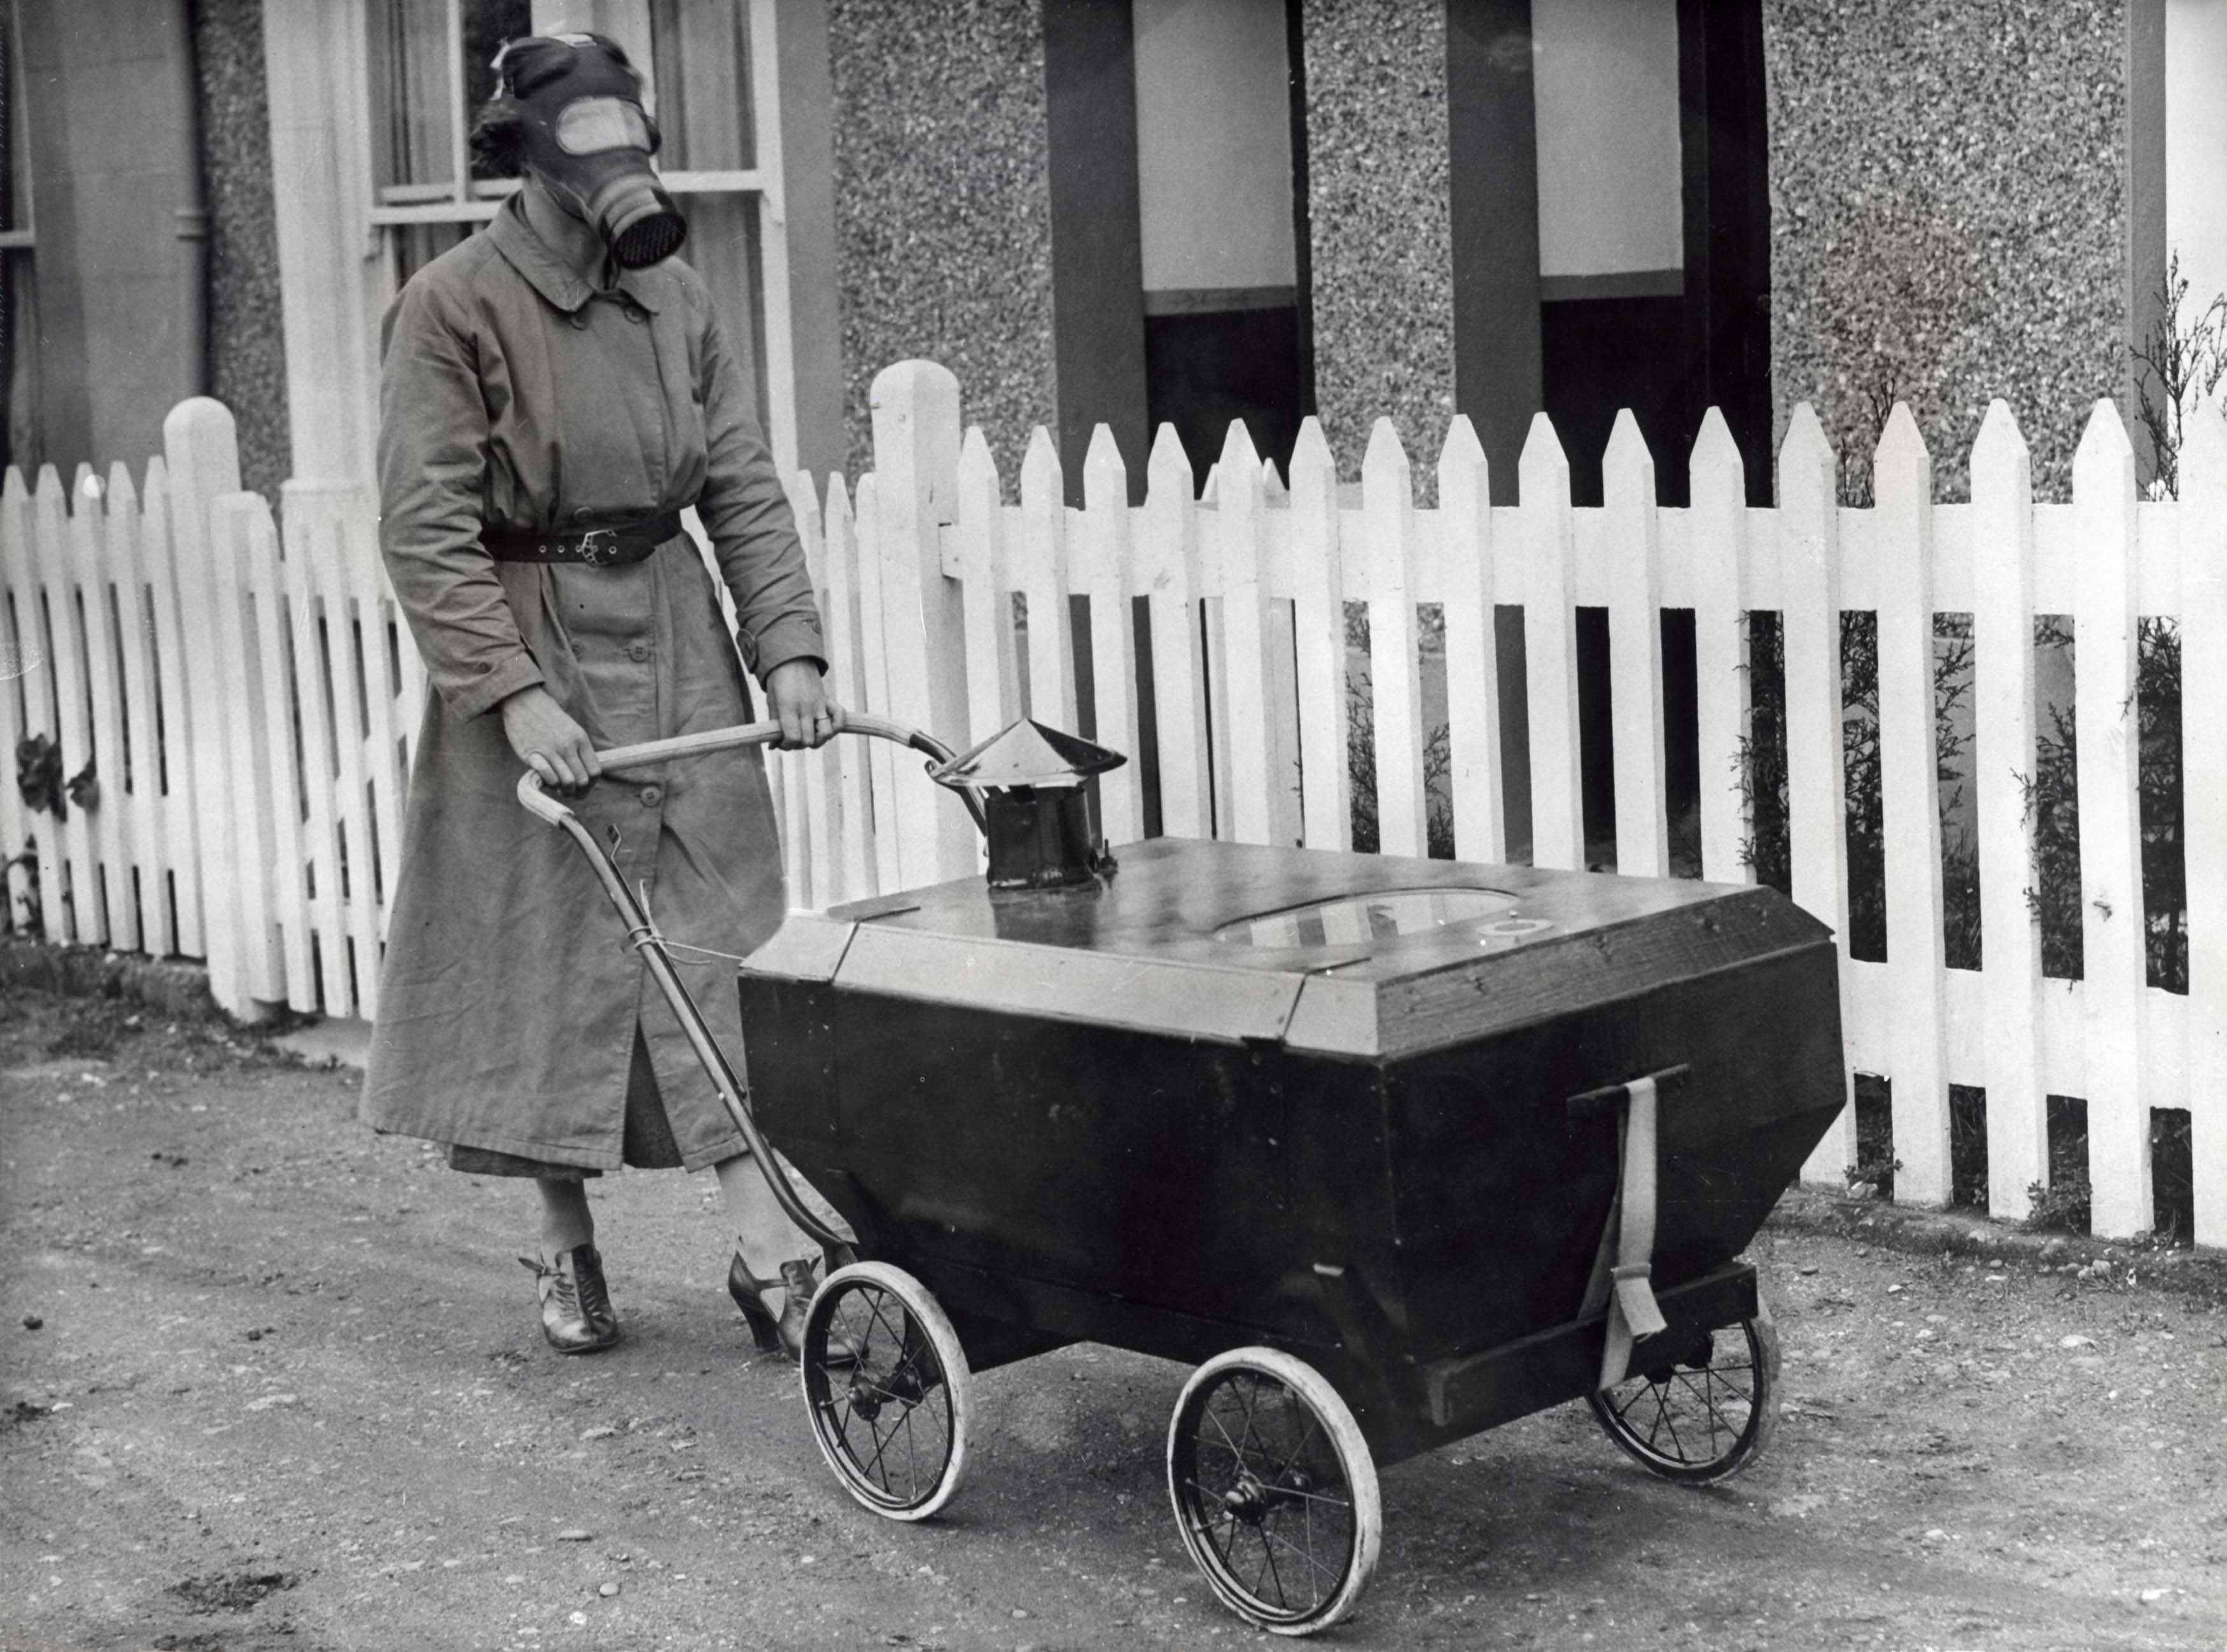 Тестирование защиты от газовых атак. Хекстейбл, Англия, 1938